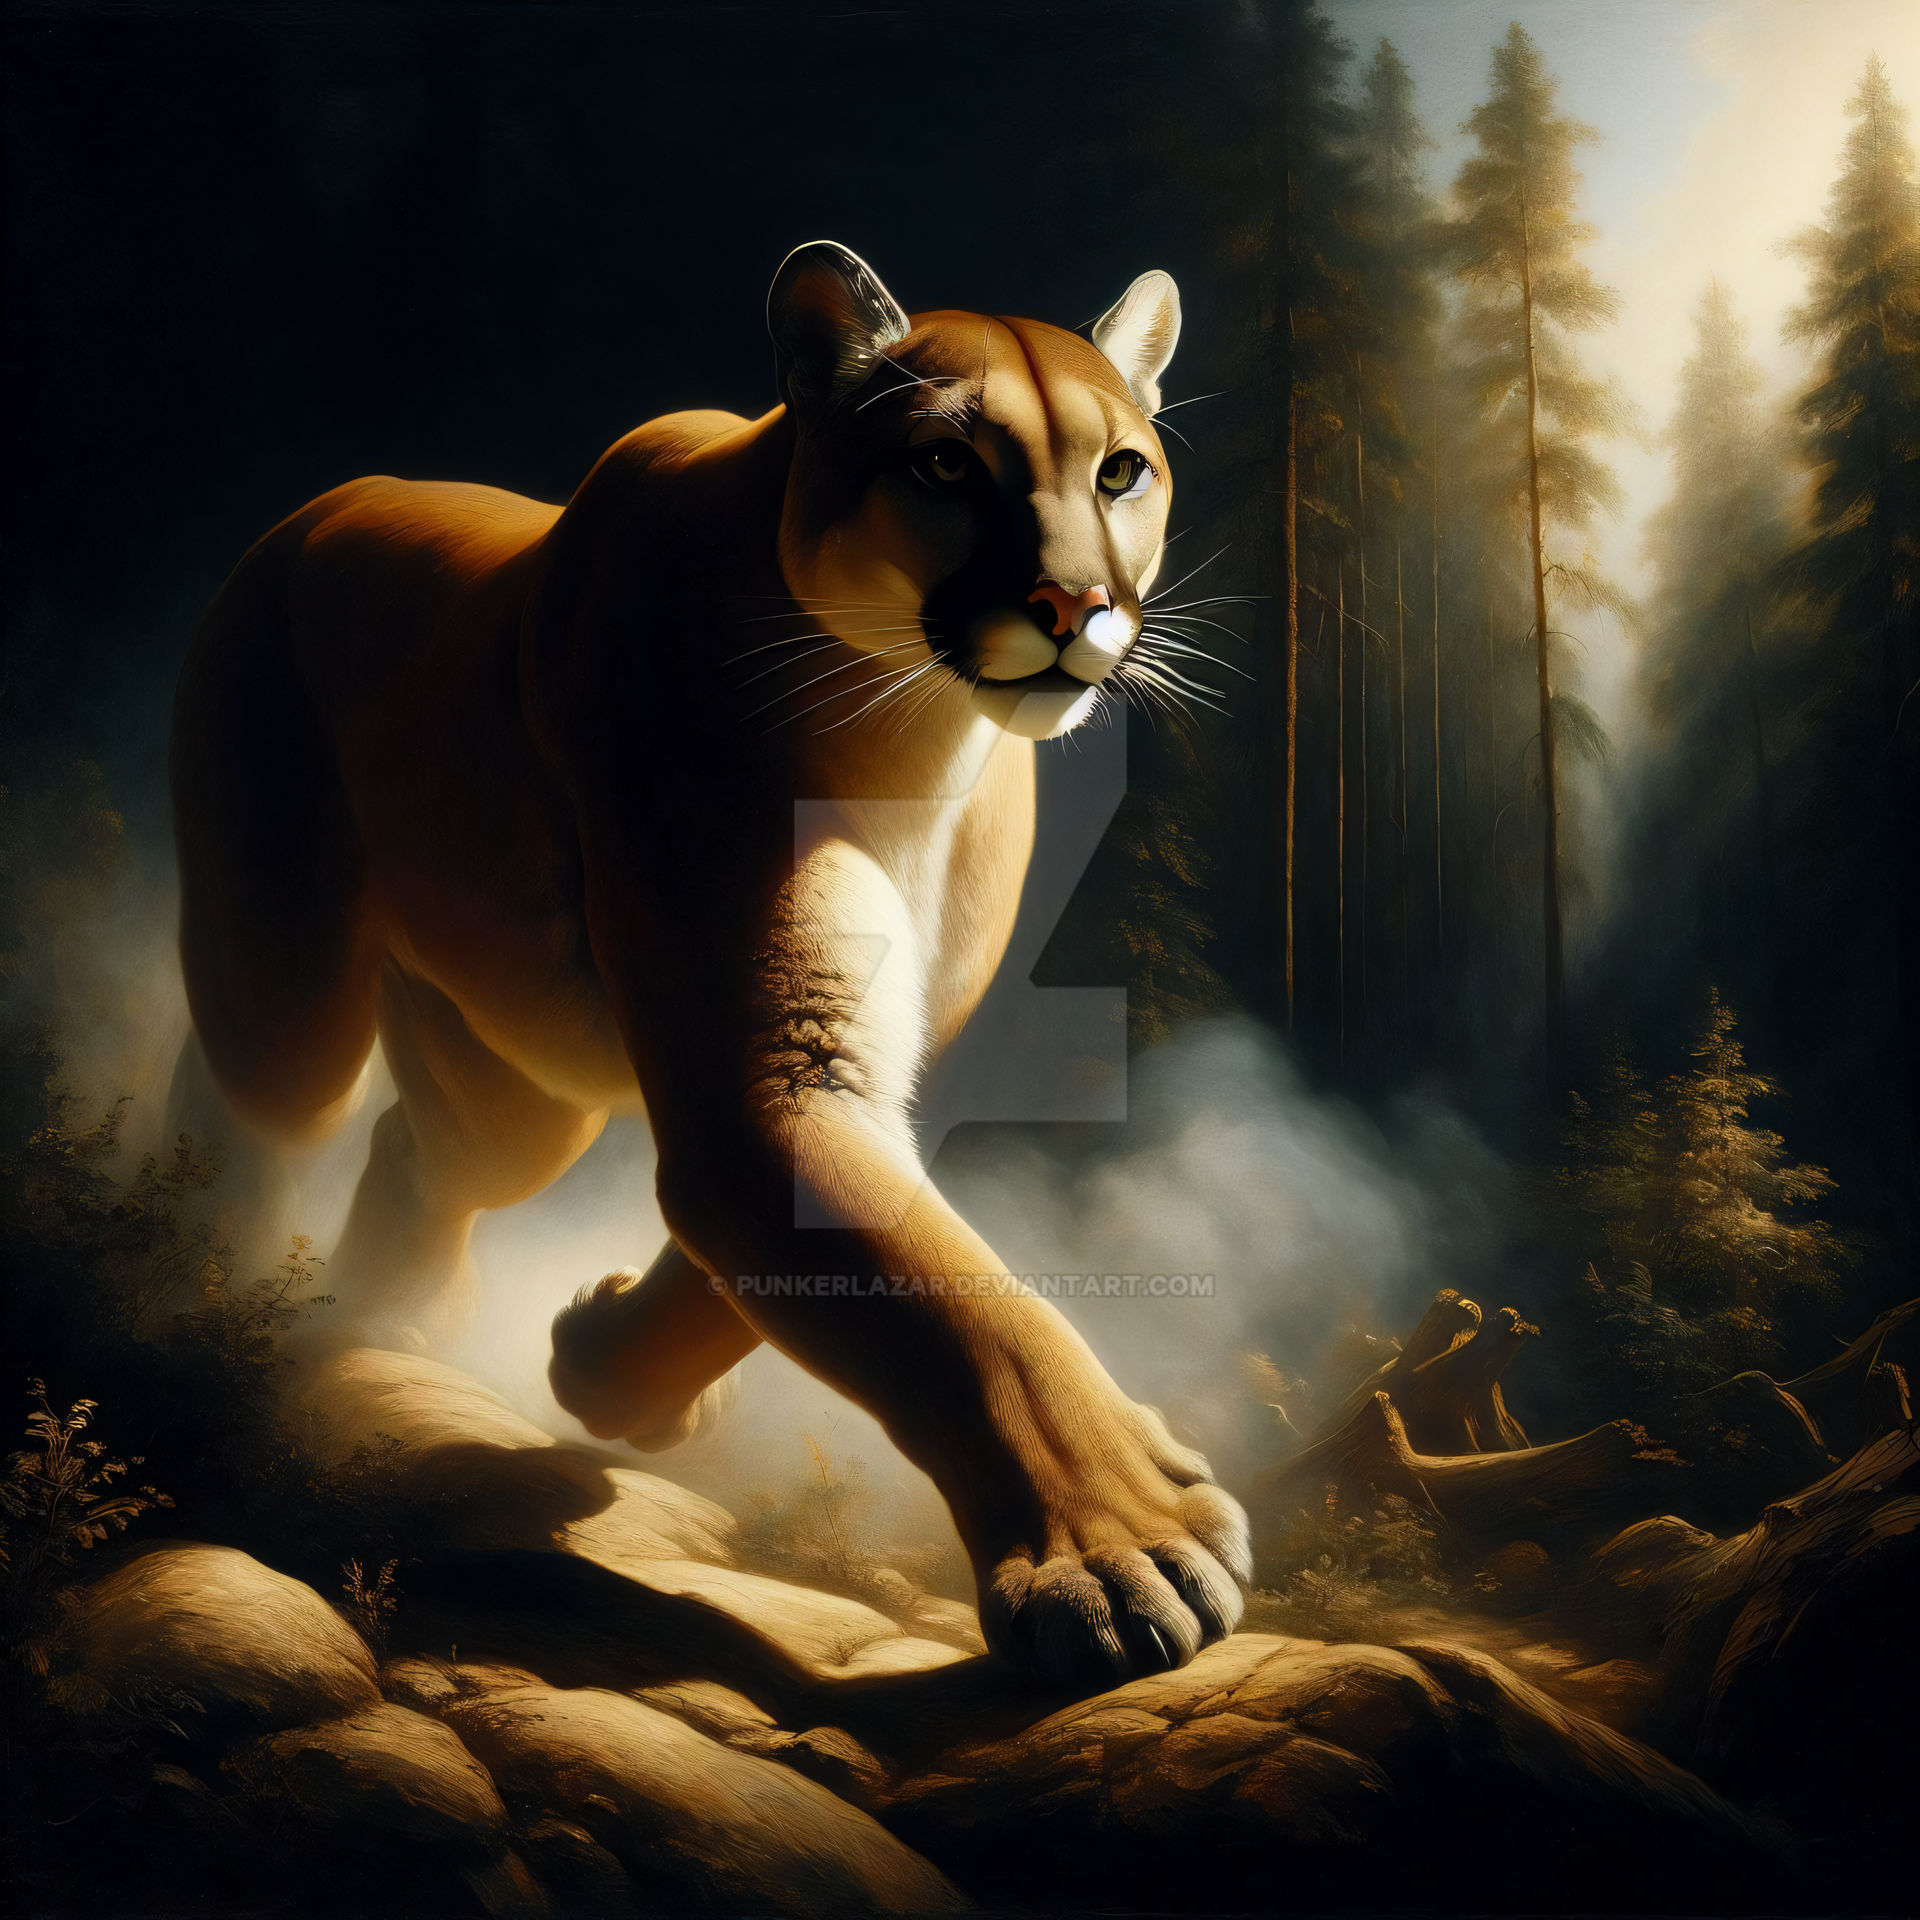 Wild Puma Artworks (4) by PunkerLazar on DeviantArt